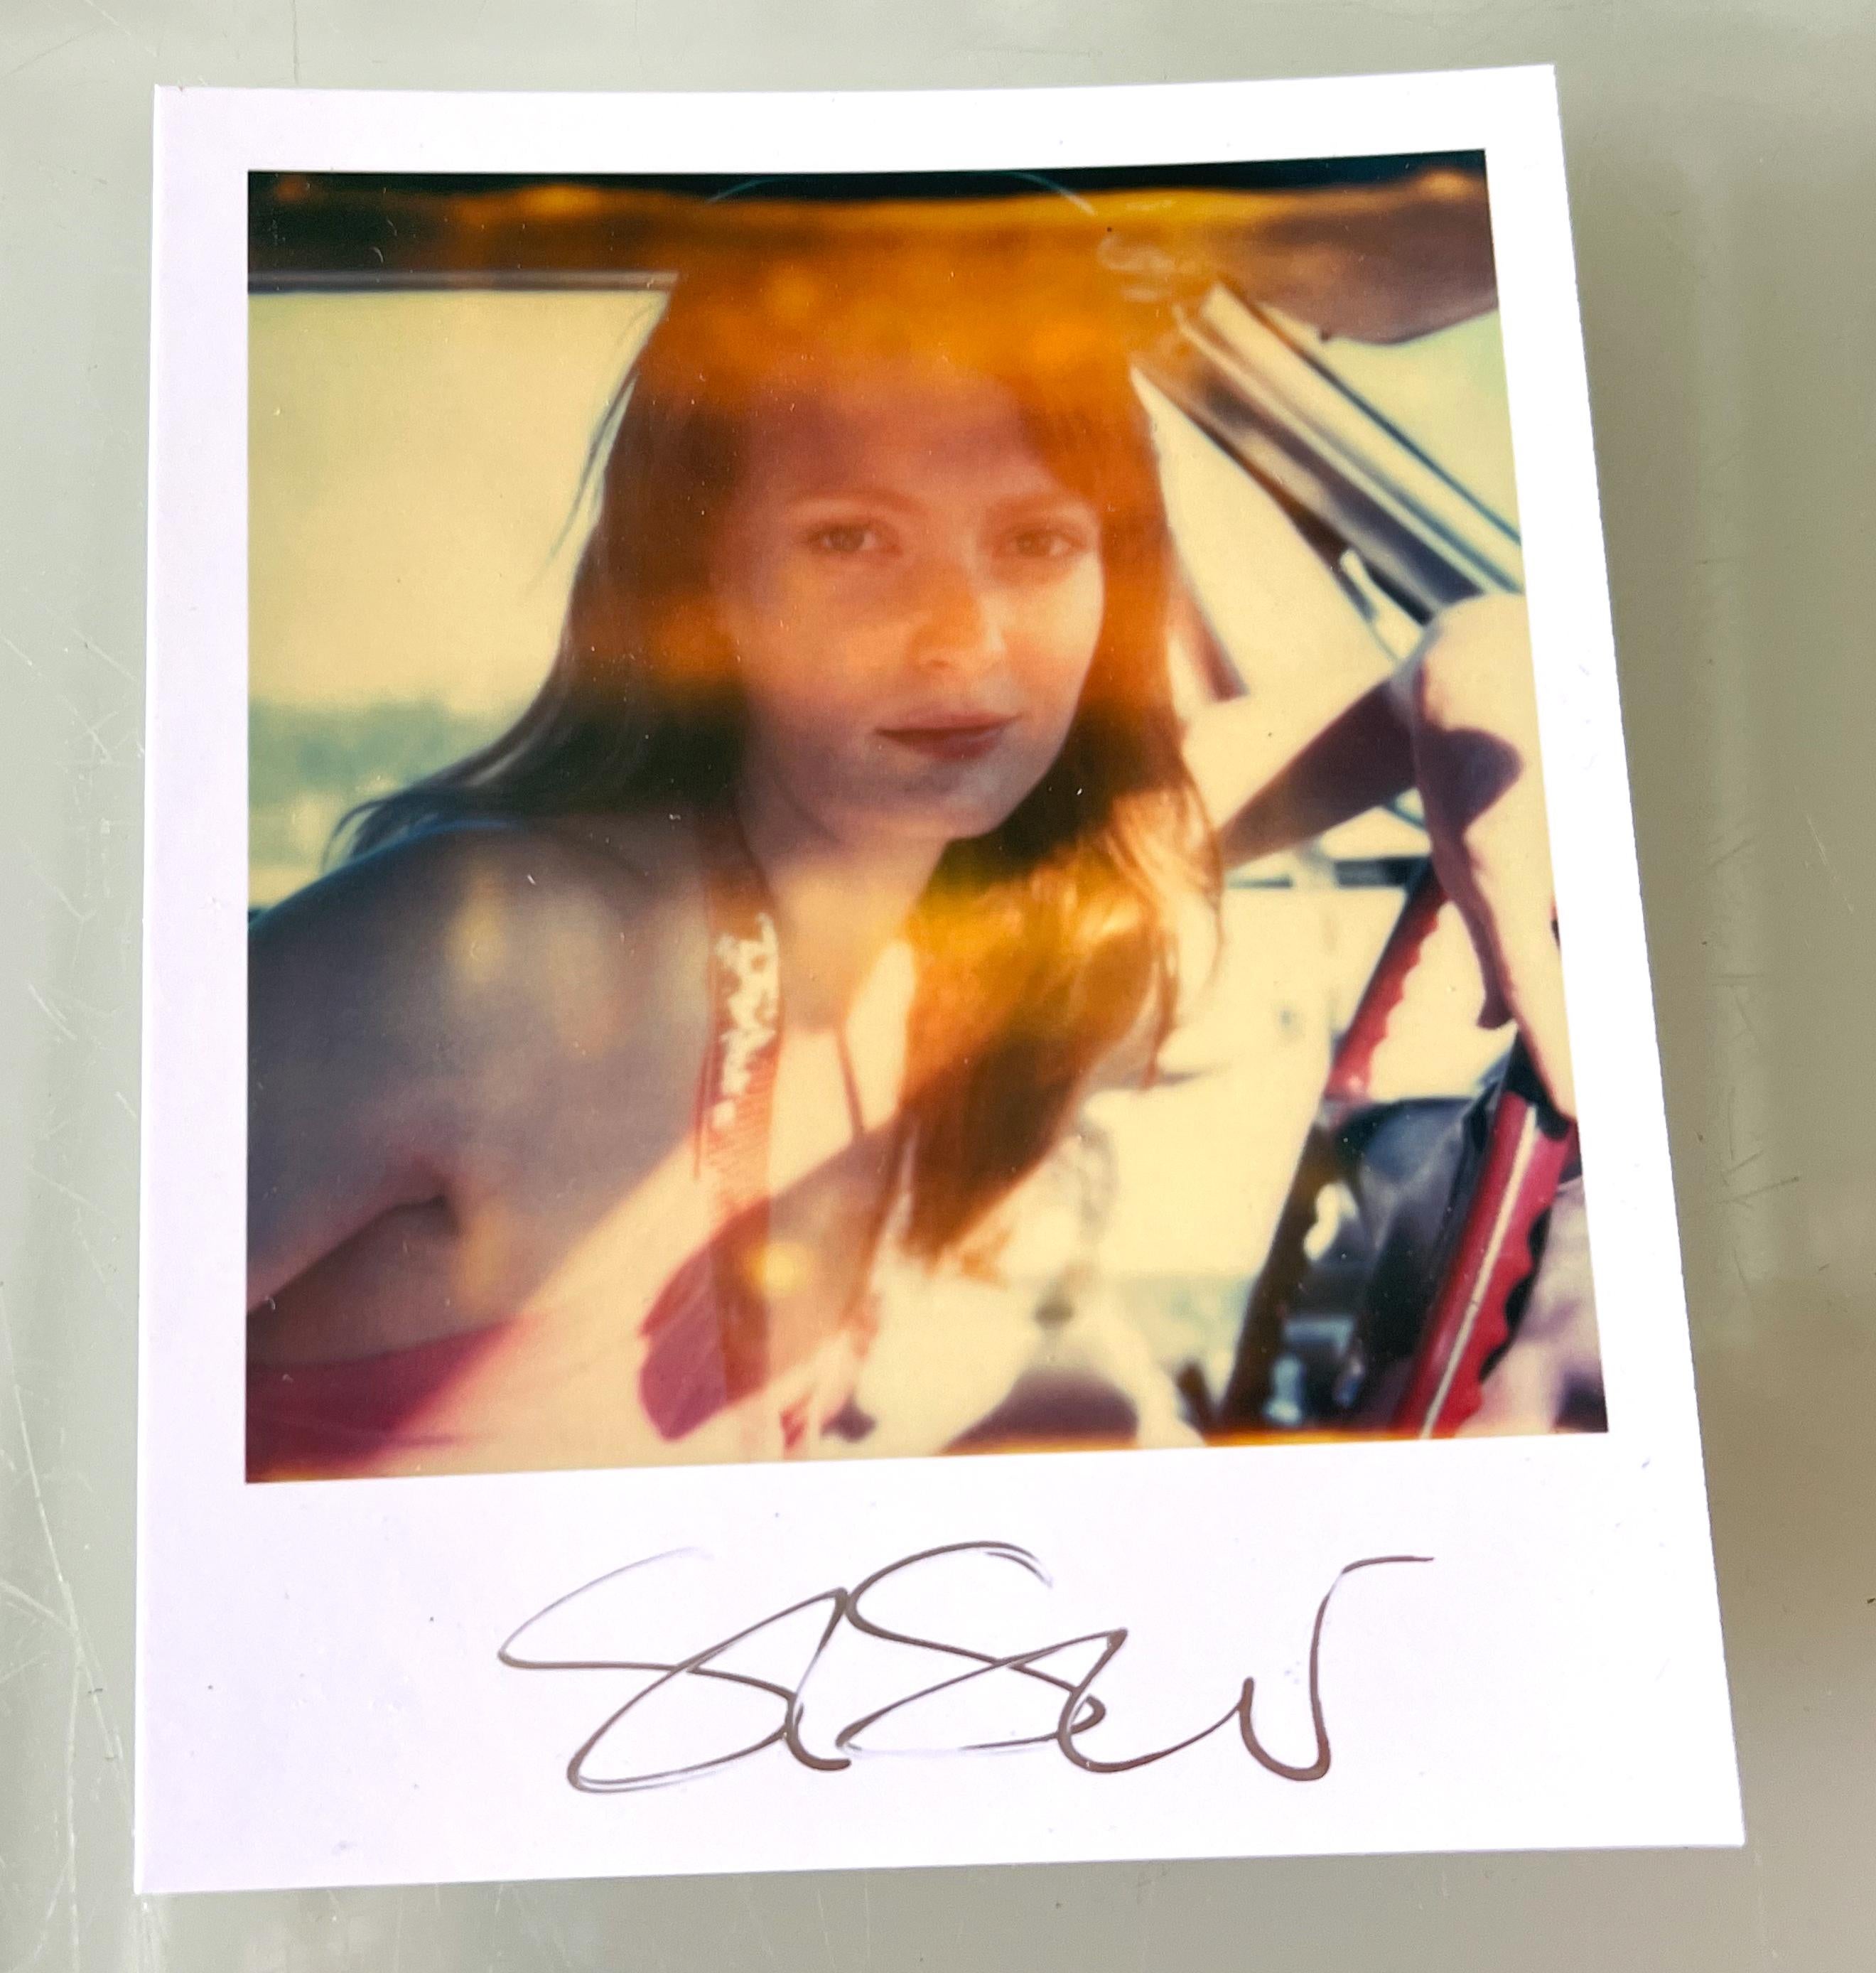 Stefanie Schneiders Mini
Ihre Augen, die Farbe des Himmels (Till Death Do Us Part) - 2005
mit Daisy McCrackin

vorne signiert, nicht montiert. 
Digitale Farbfotografien auf der Grundlage eines Polaroids. 

Offene Editionen in Polaroidgröße